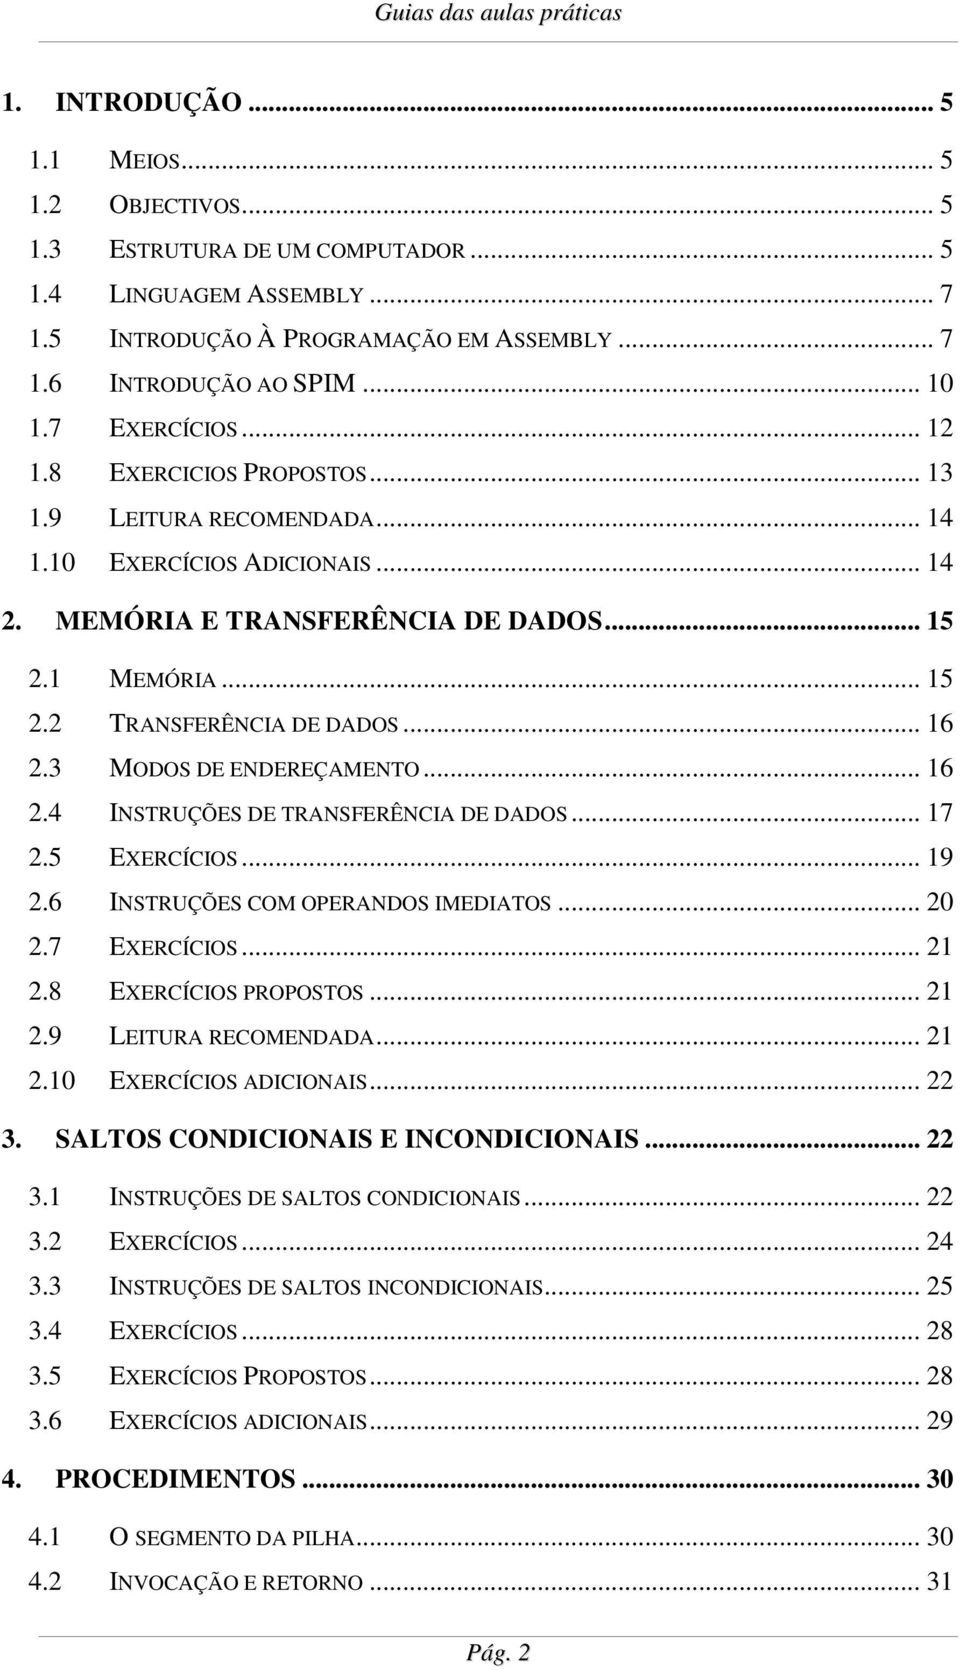 . 16 2.3 MODOS DE ENDEREÇAMENTO.. 16 2.4 INSTRUÇÕES DE TRANSFERÊNCIA DE DADOS. 17 2.5 EXERCÍCIOS.. 19 2.6 INSTRUÇÕES COM OPERANDOS IMEDIATOS 20 2.7 EXERCÍCIOS.. 21 2.8 EXERCÍCIOS PROPOSTOS. 21 2.9 LEITURA RECOMENDADA 21 2.